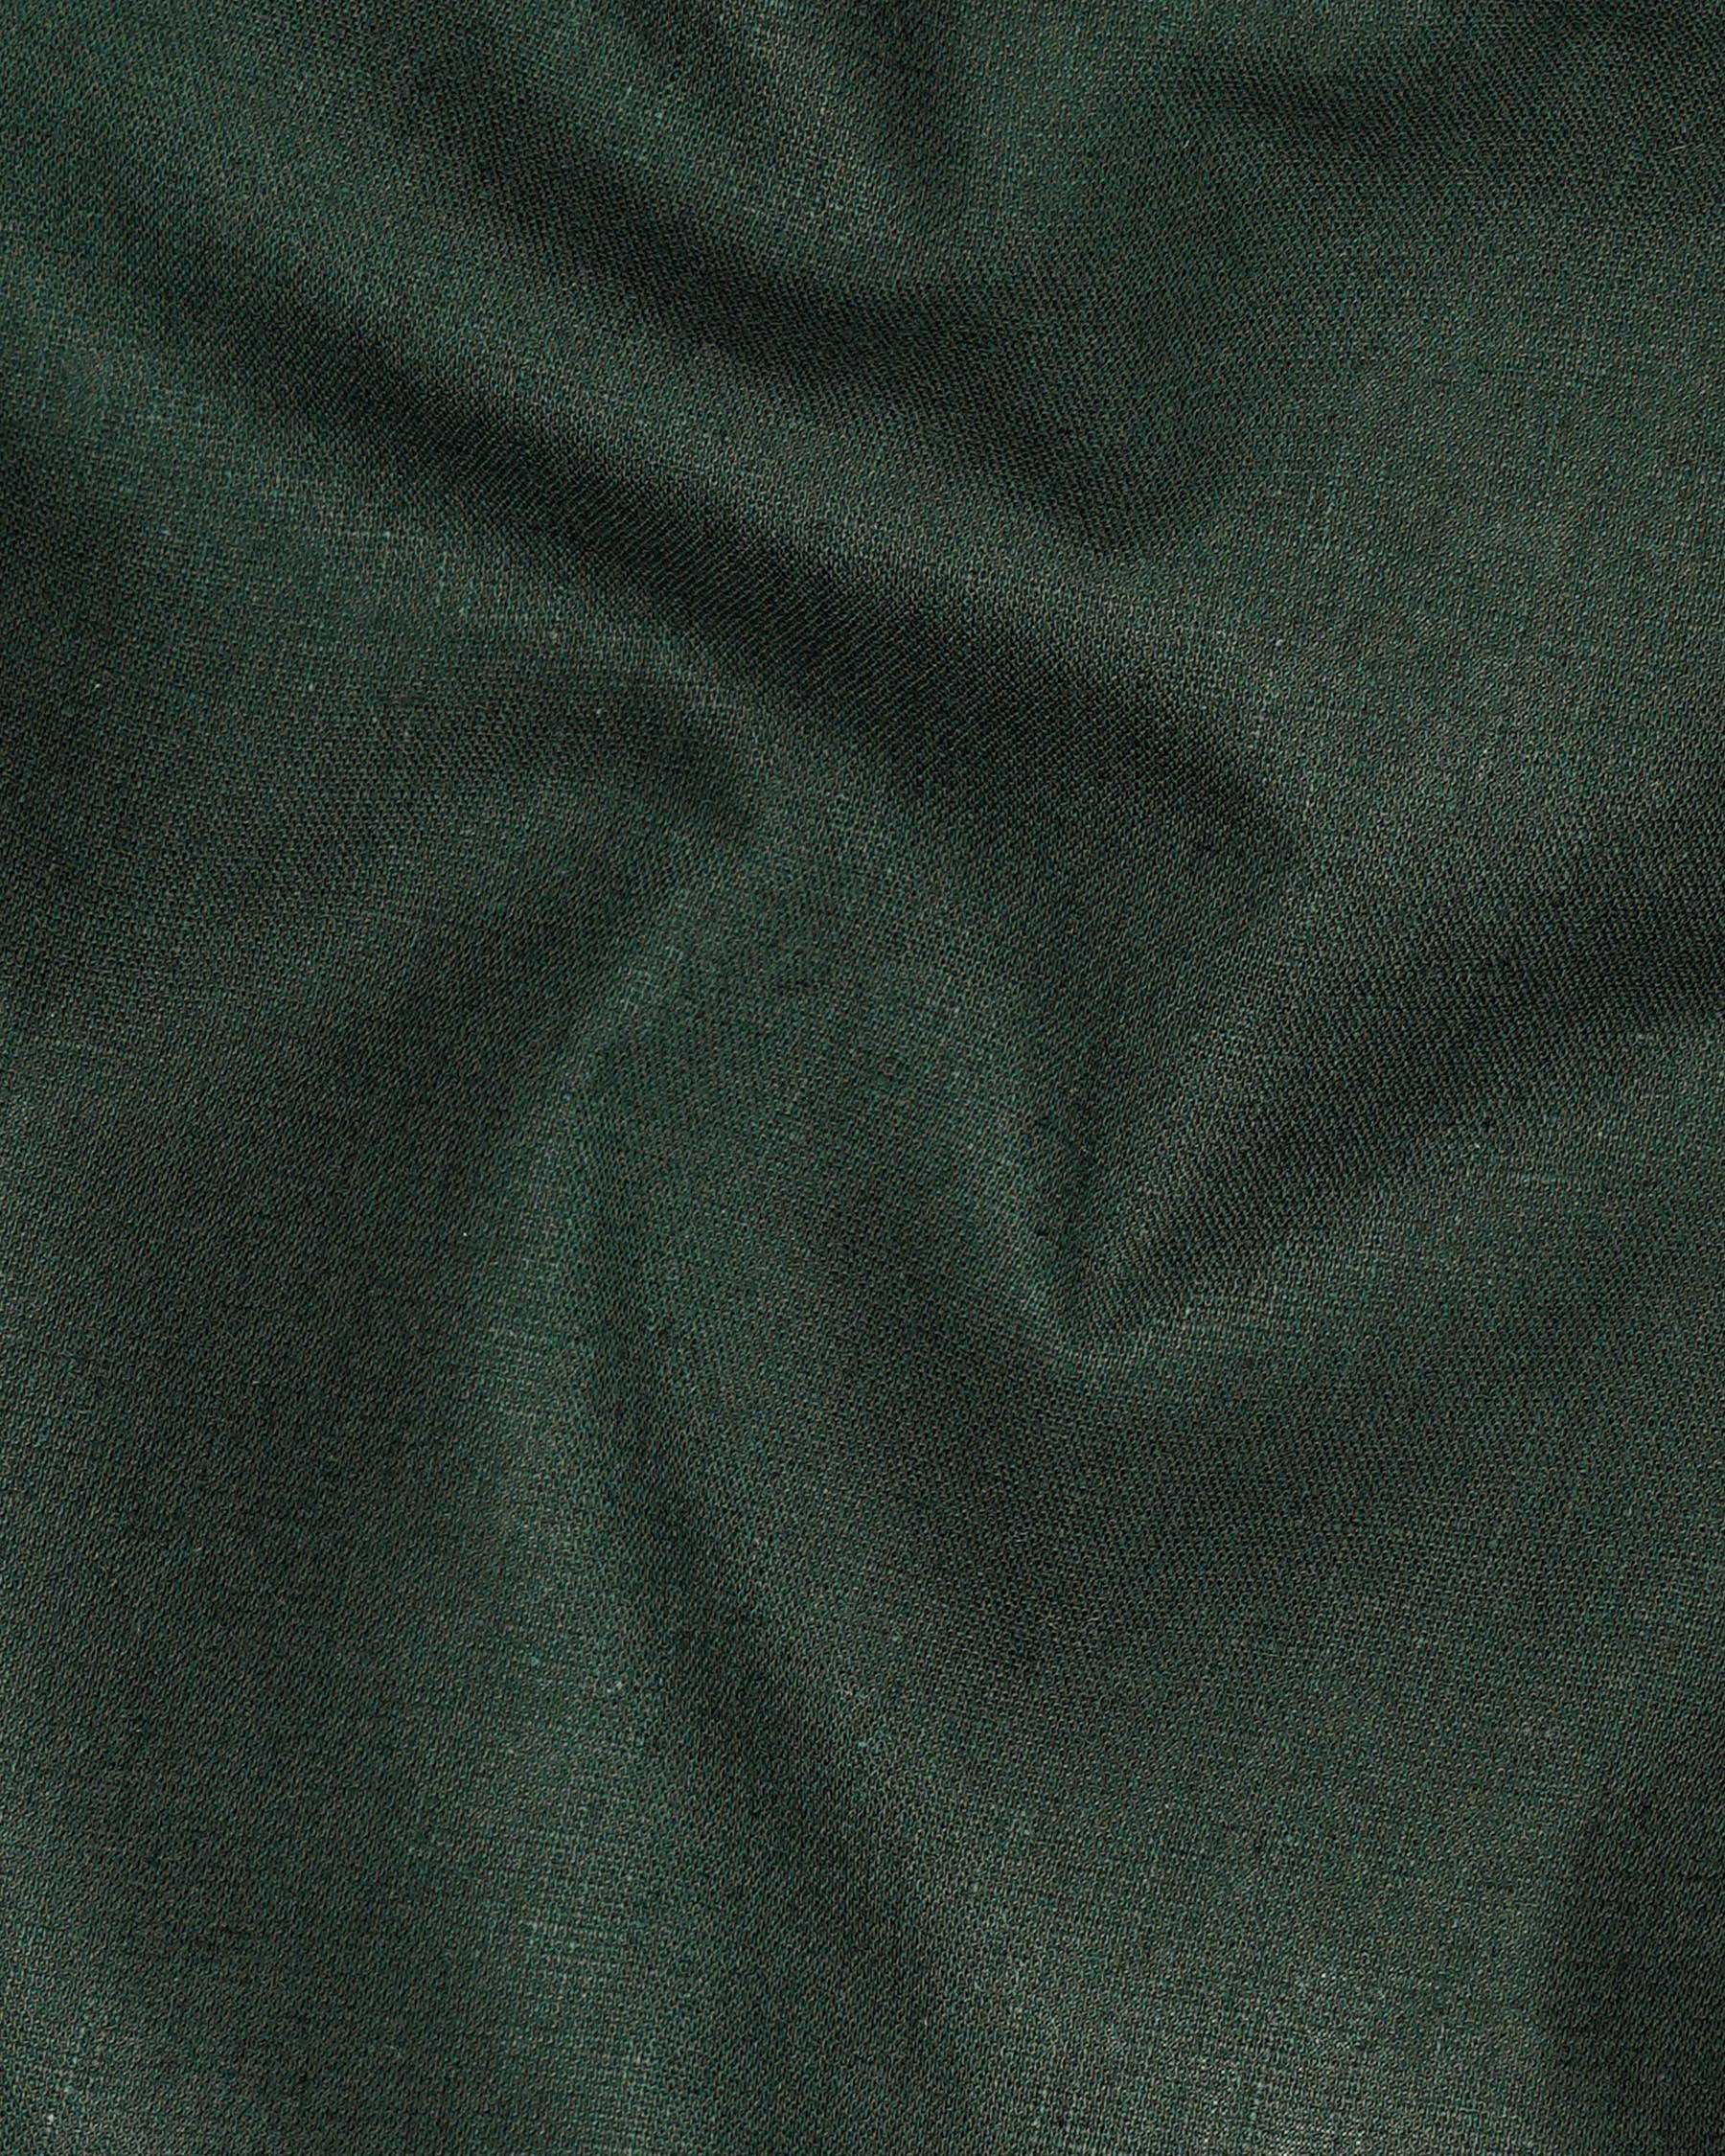 Celtic Green Luxurious Linen Shirt 7257-M-GR-P-38, 7257-M-GR-P-H-38, 7257-M-GR-P-39, 7257-M-GR-P-H-39, 7257-M-GR-P-40, 7257-M-GR-P-H-40, 7257-M-GR-P-42, 7257-M-GR-P-H-42, 7257-M-GR-P-44, 7257-M-GR-P-H-44, 7257-M-GR-P-46, 7257-M-GR-P-H-46, 7257-M-GR-P-48, 7257-M-GR-P-H-48, 7257-M-GR-P-50, 7257-M-GR-P-H-50, 7257-M-GR-P-52, 7257-M-GR-P-H-52